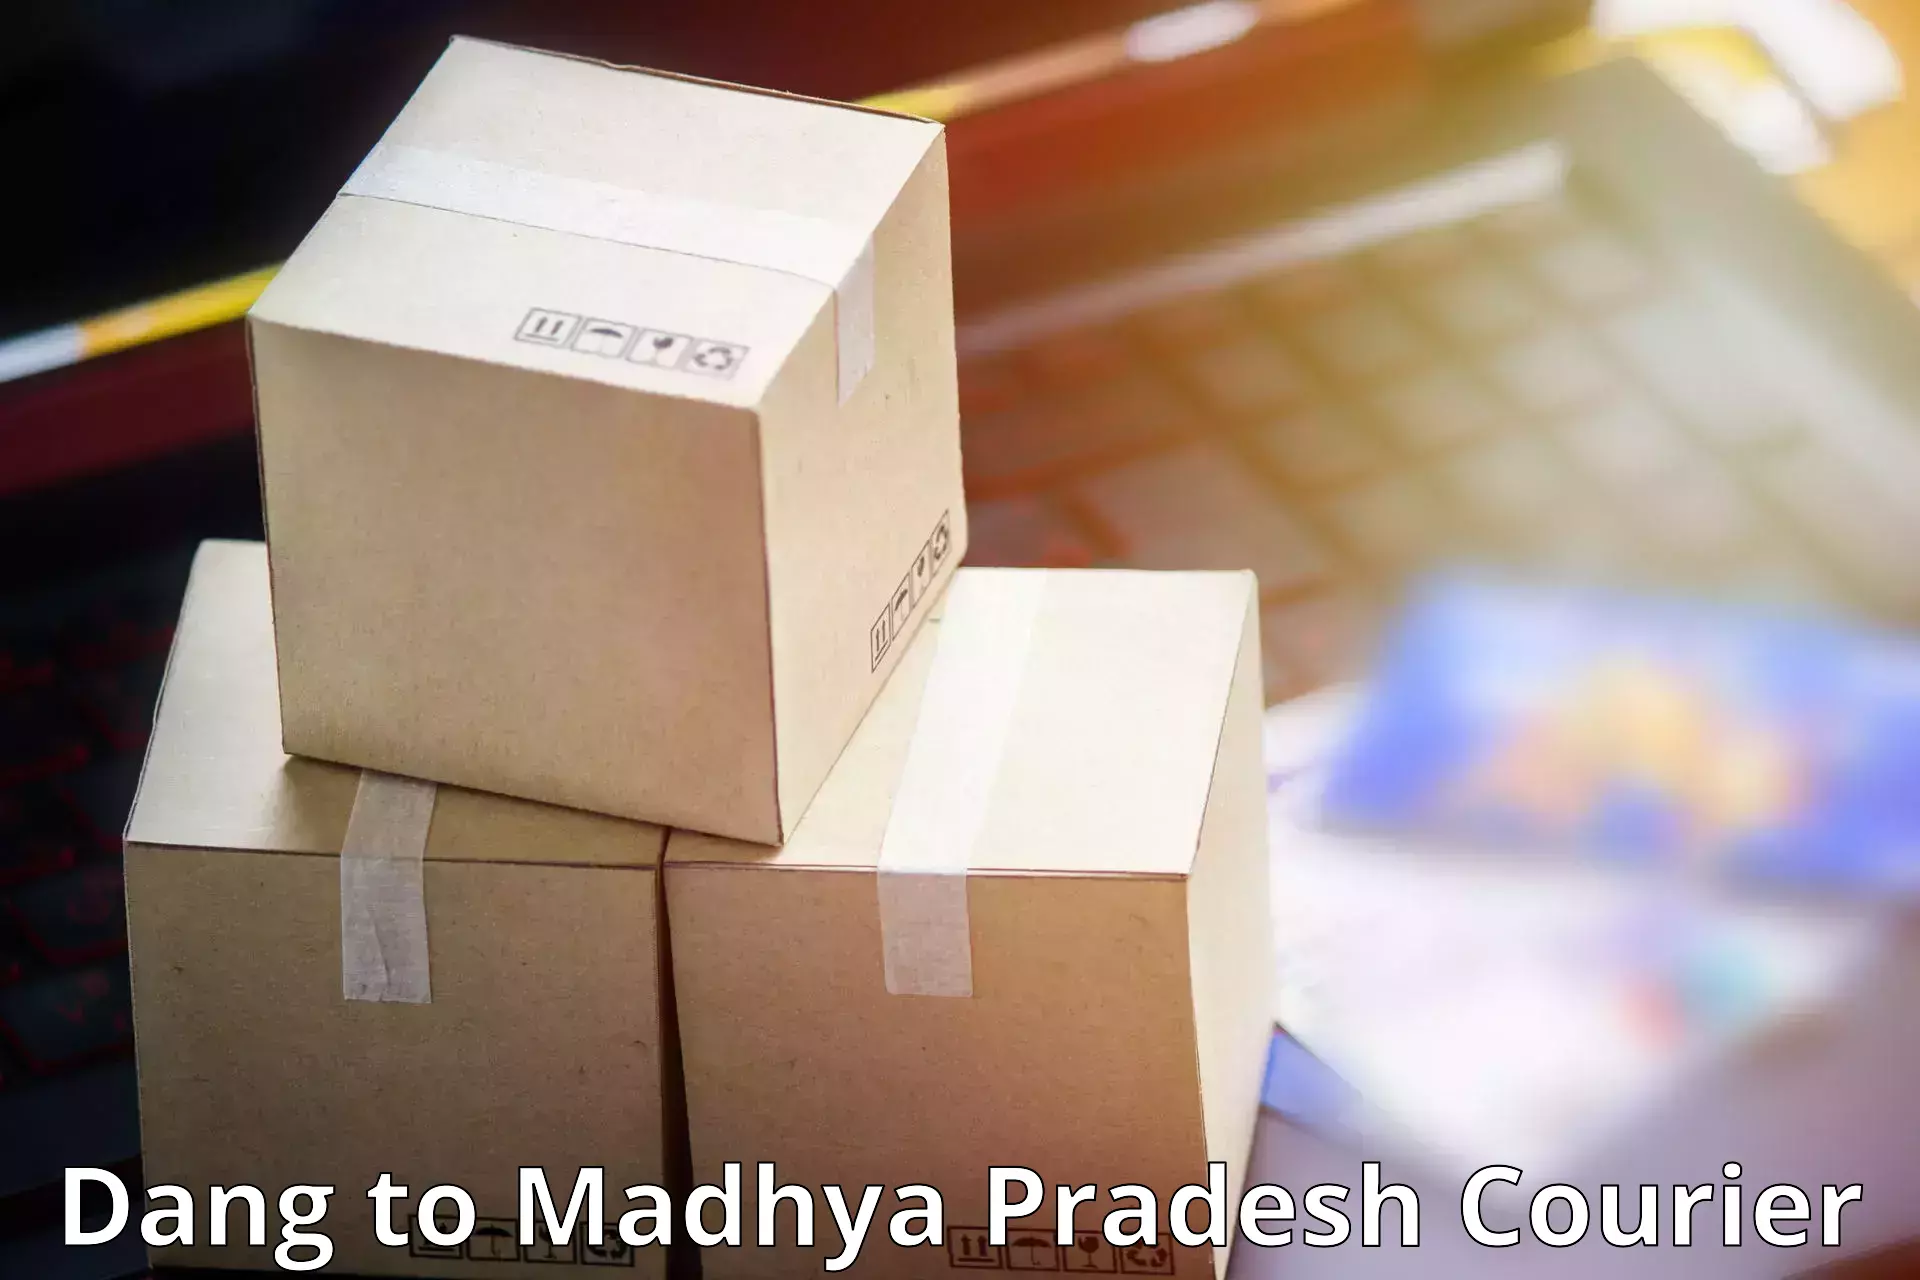 Fast shipping solutions Dang to Madhya Pradesh